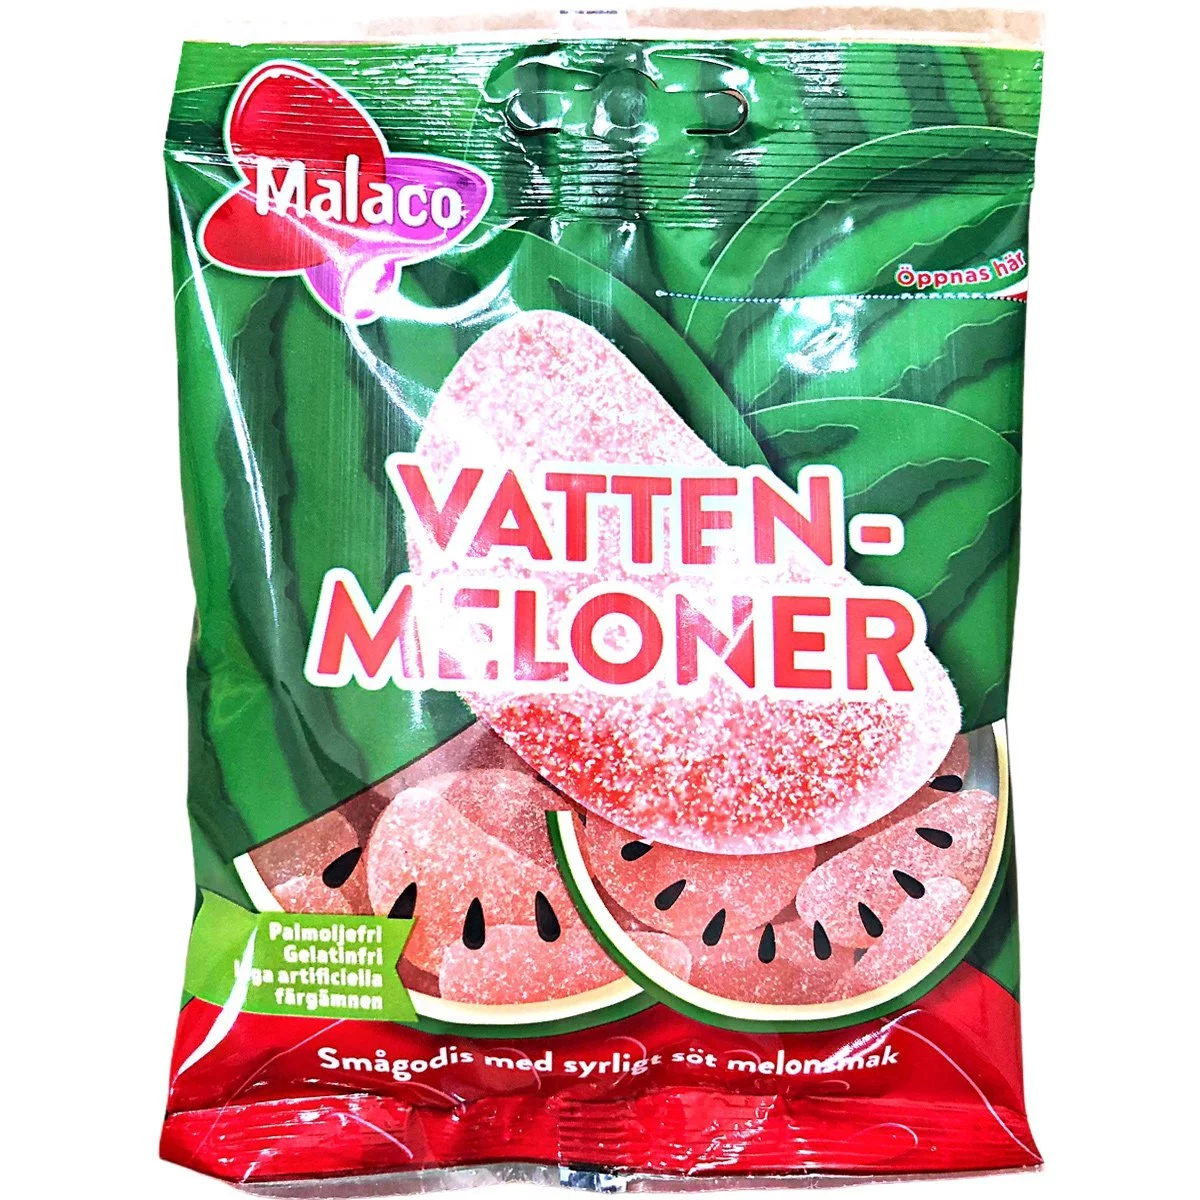 Malaco Vattenmeloner (70g) 1